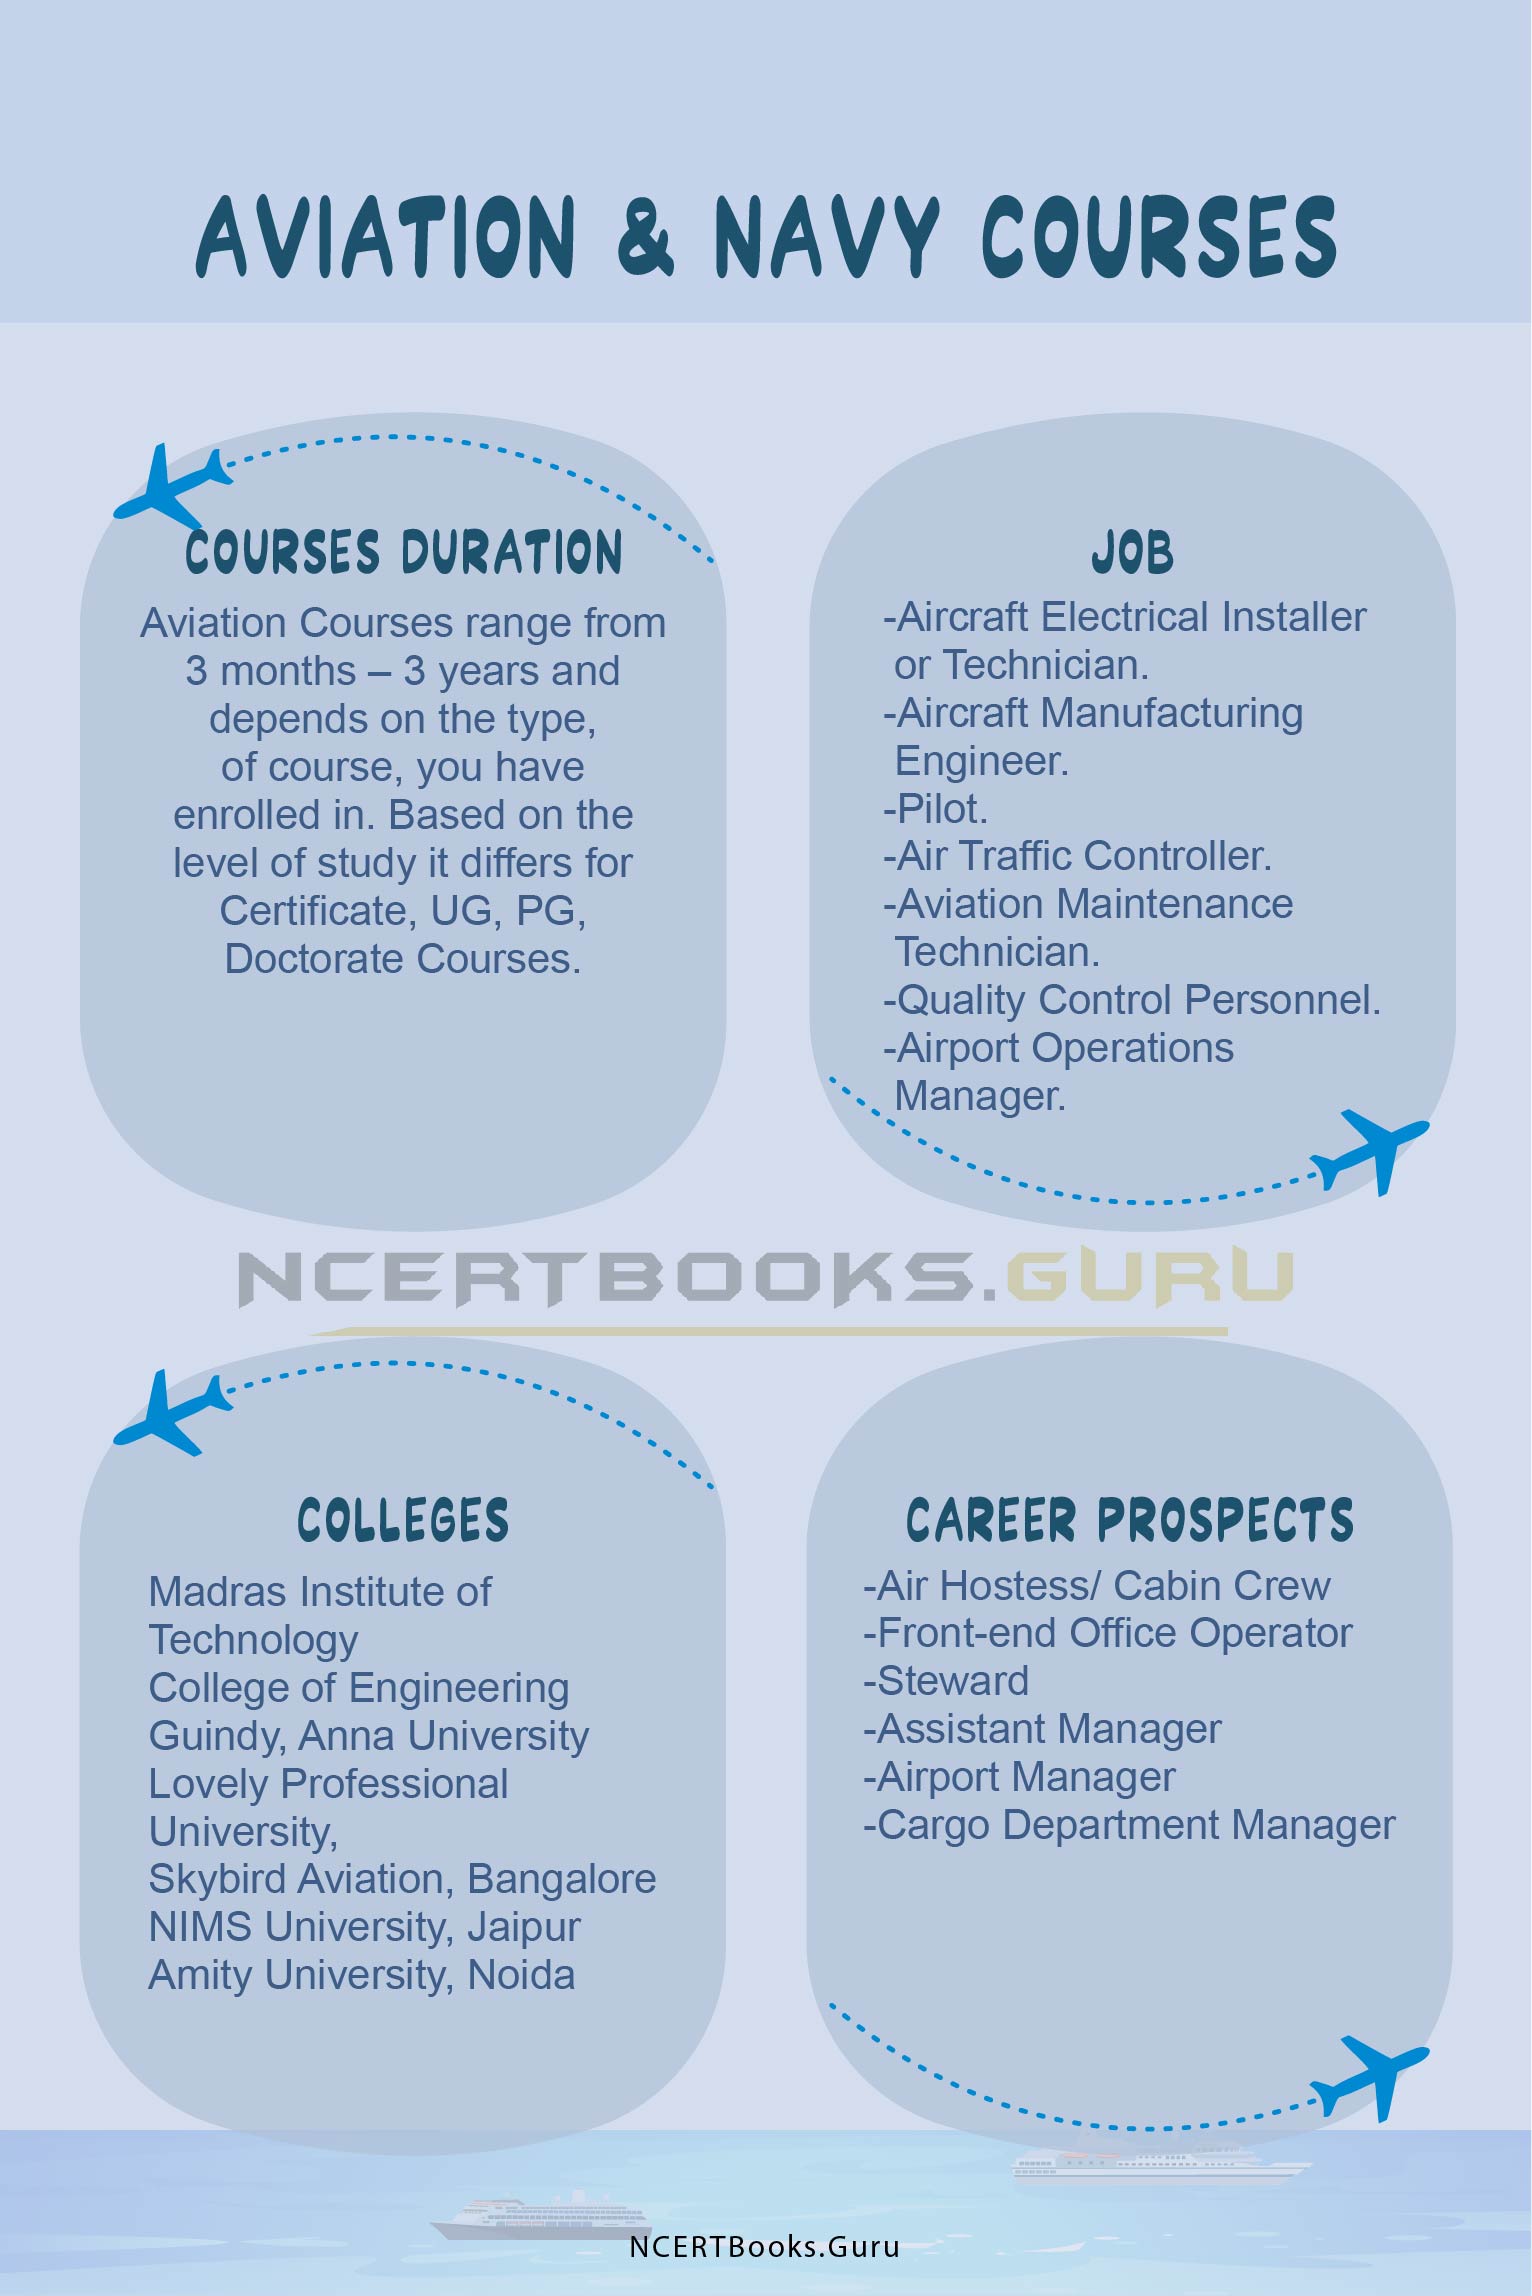 Aviation & Navy Courses